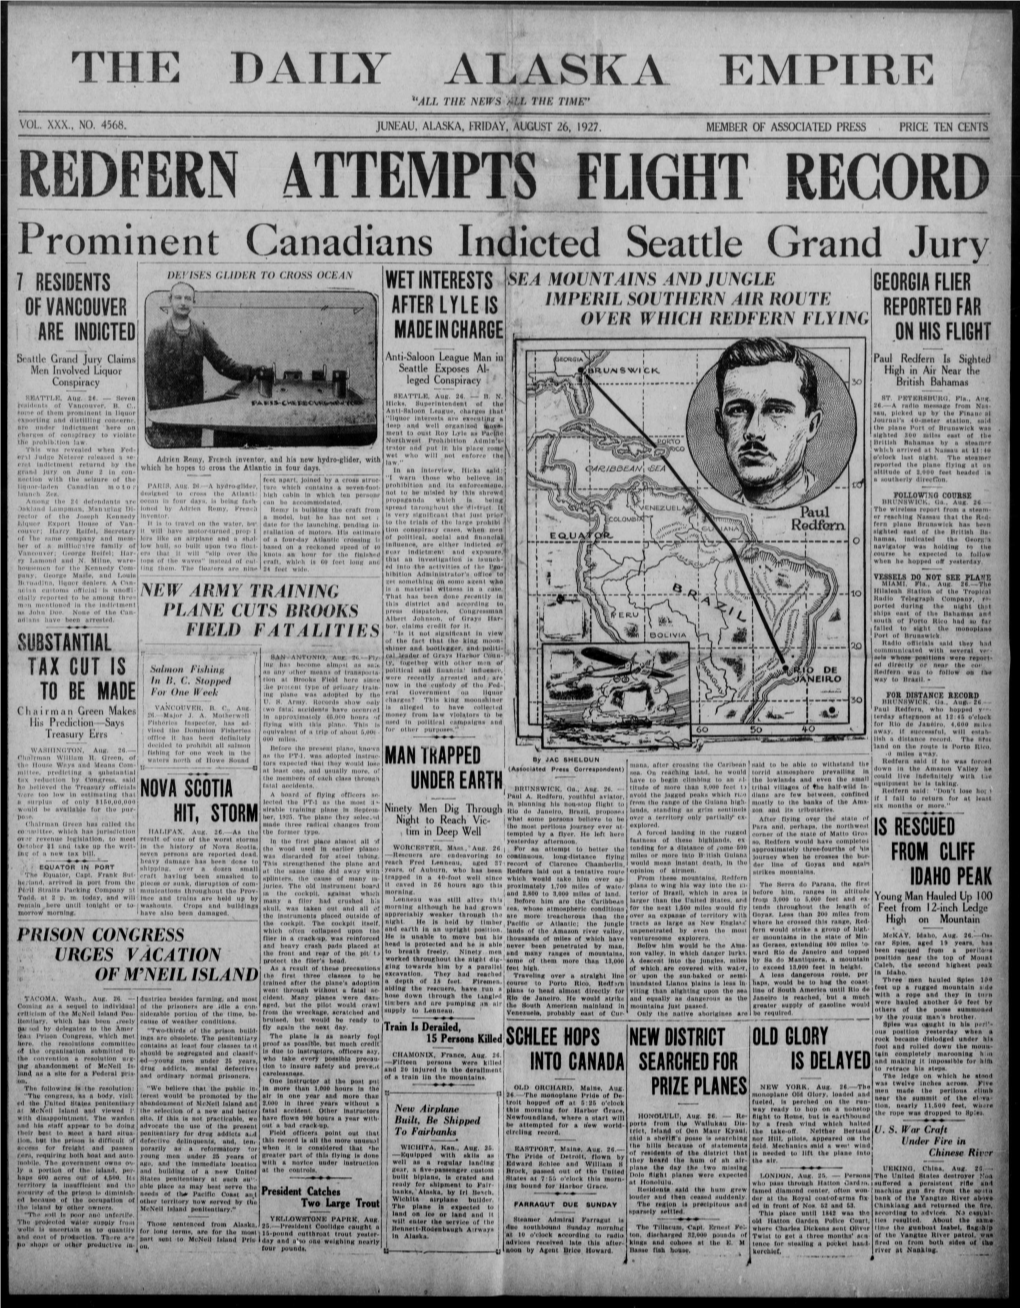 Redfern Attempts** Flight Record